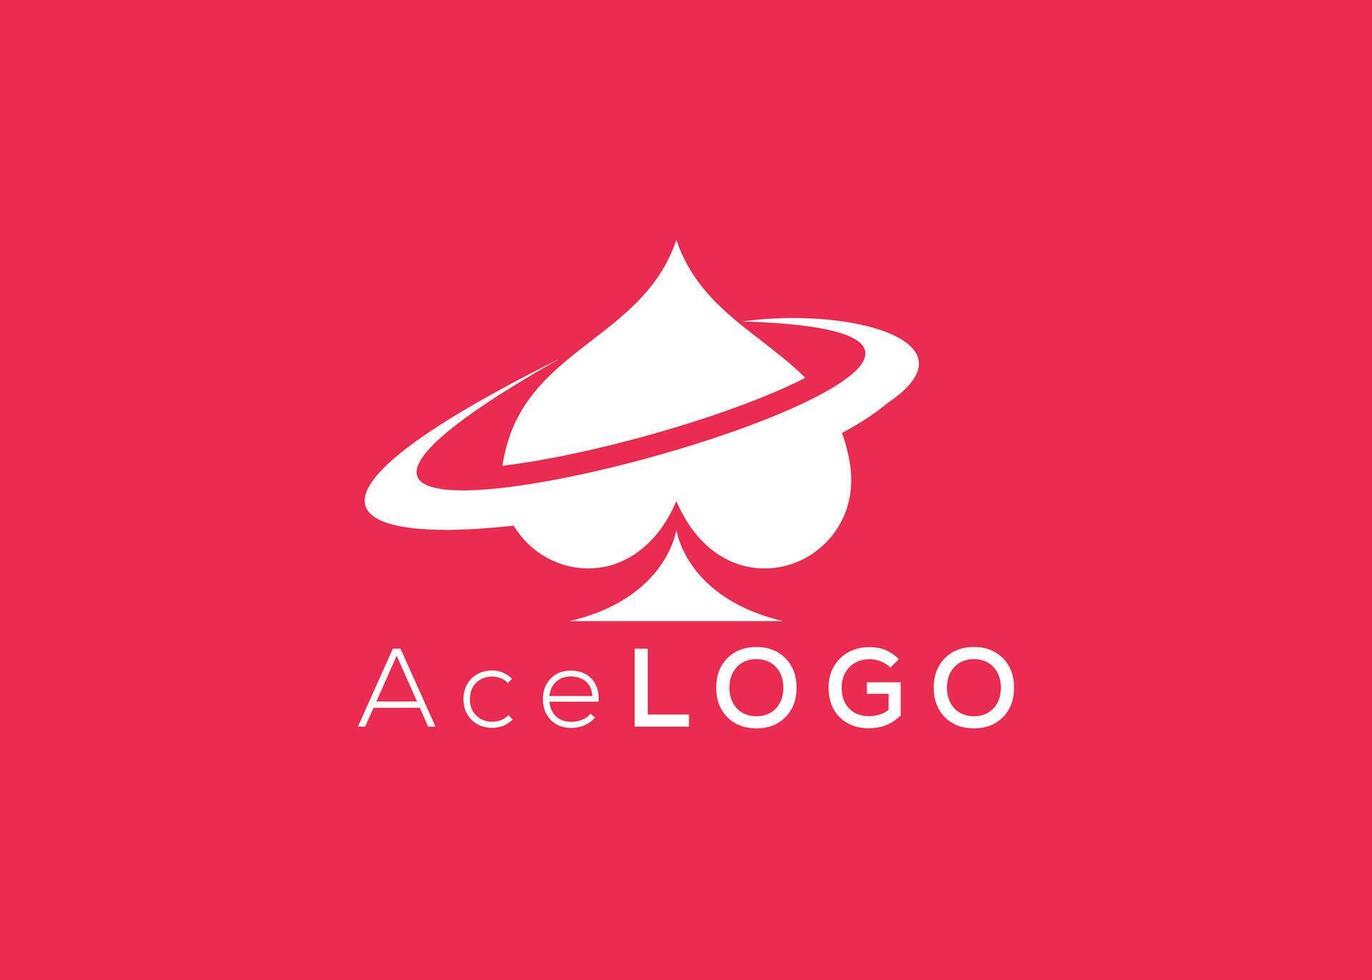 minimaliste ace logo conception vecteur modèle. Créatif rouge ace forme logo